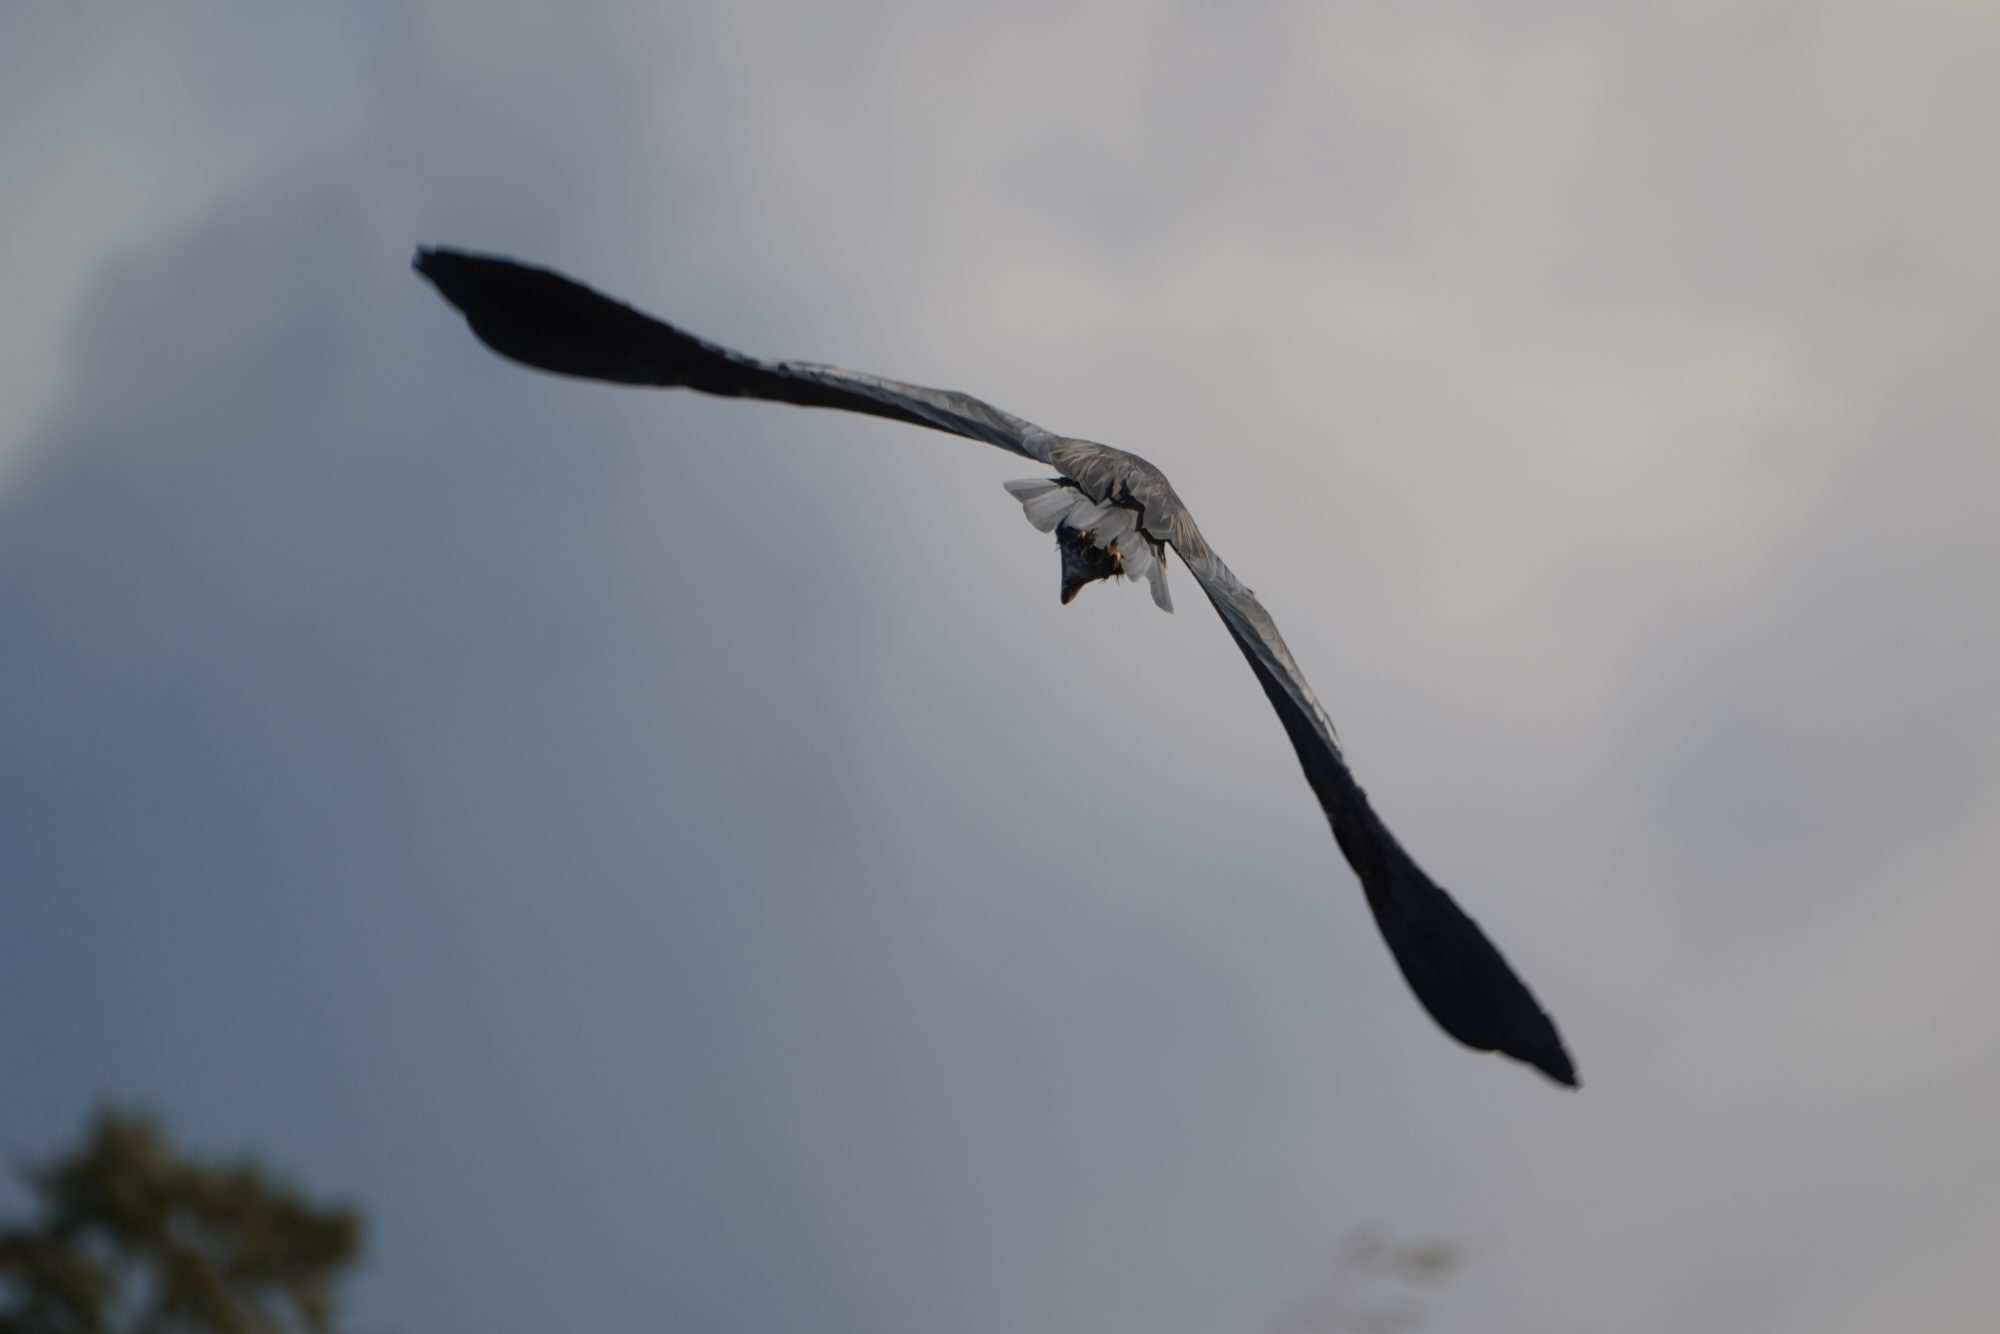 Great Blue Heron in flight